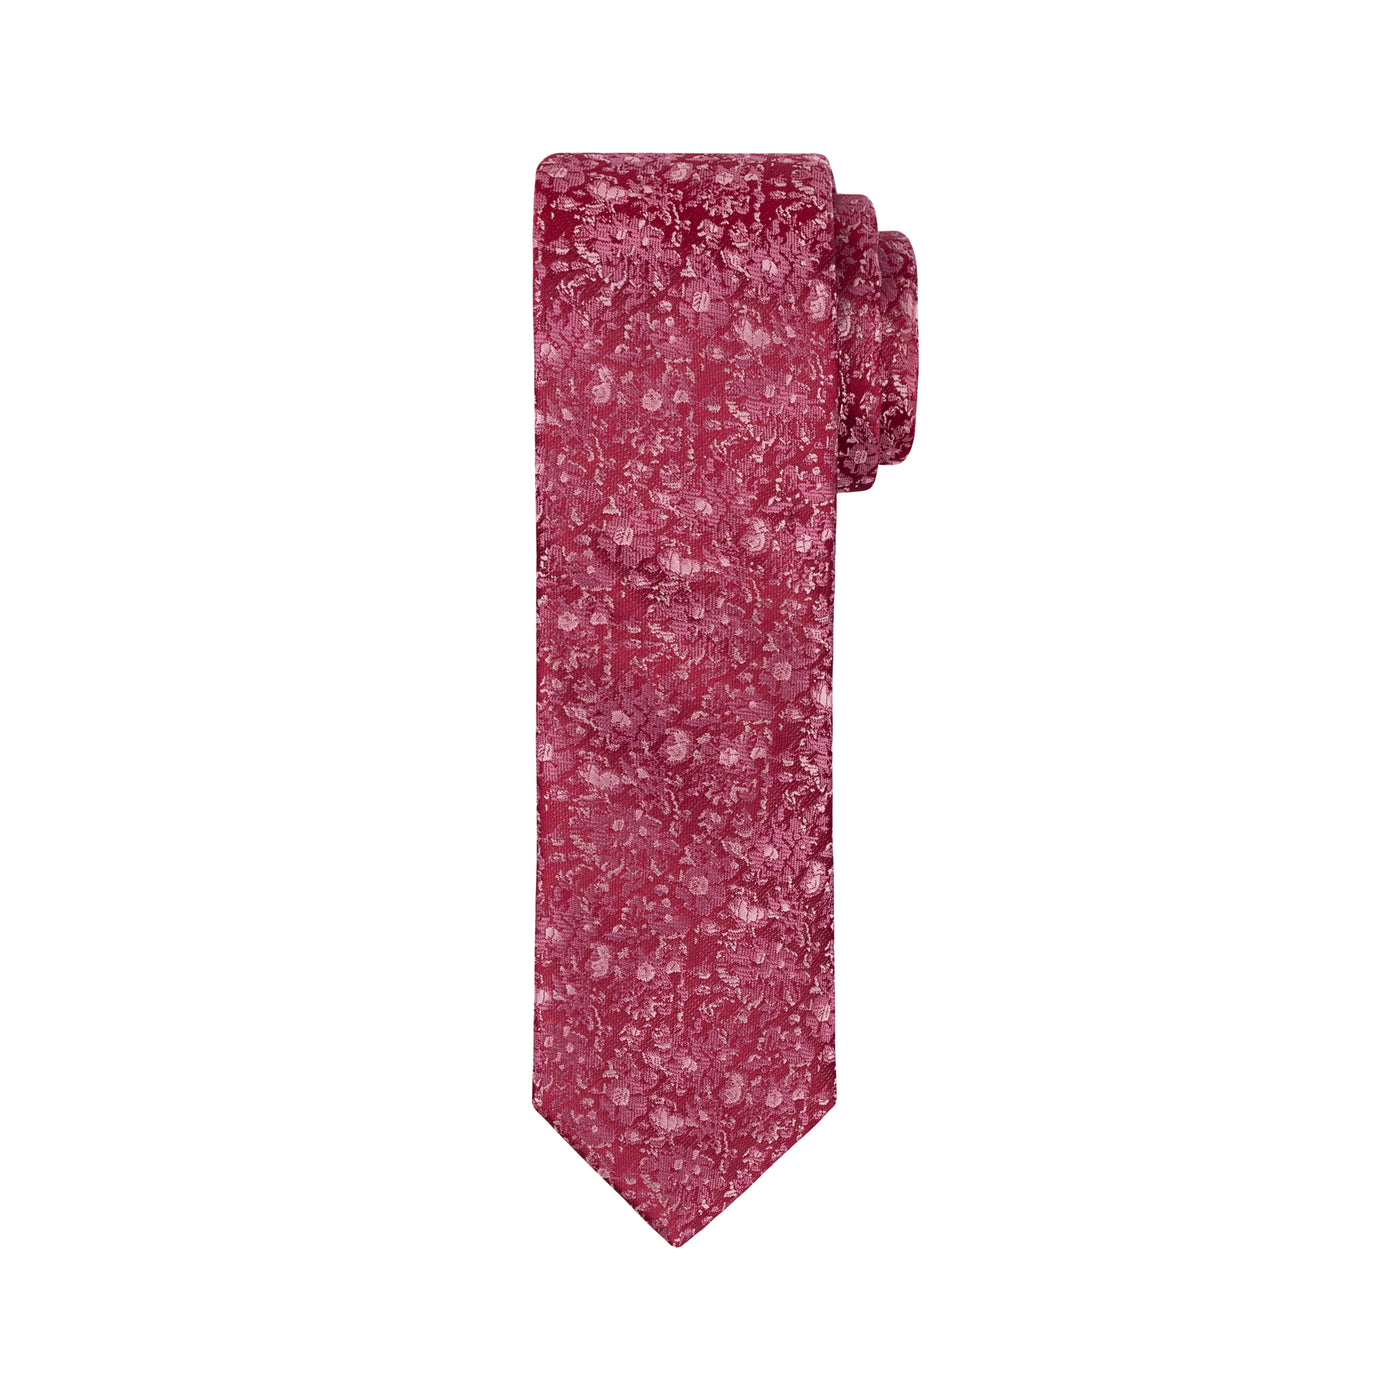 Boy's Rose Tie - Pink